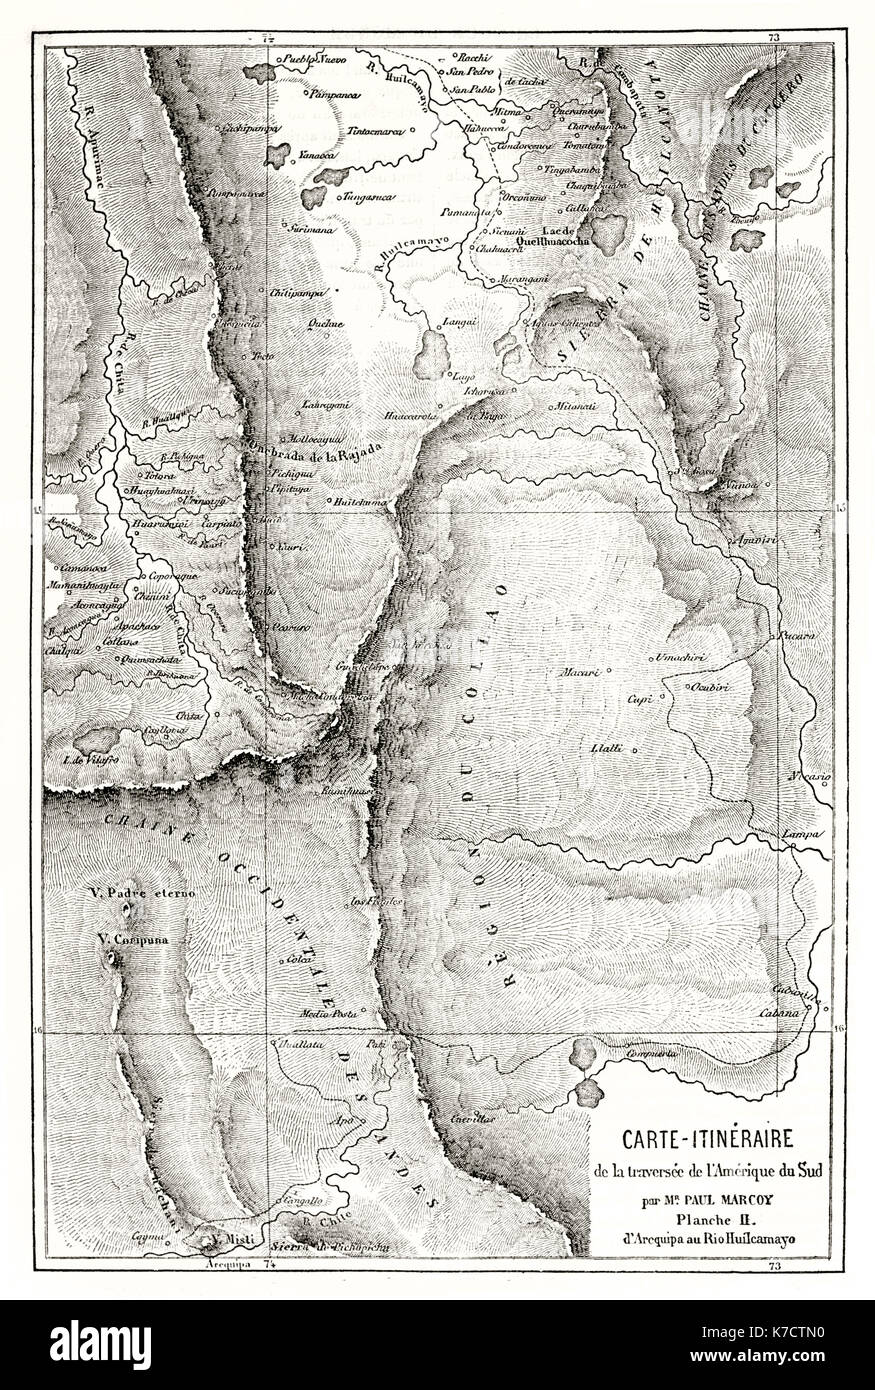 Andean Region old map. By Erhard and Bonaparte, publ. on Le Tour du Monde, Paris, 1862 Stock Photo